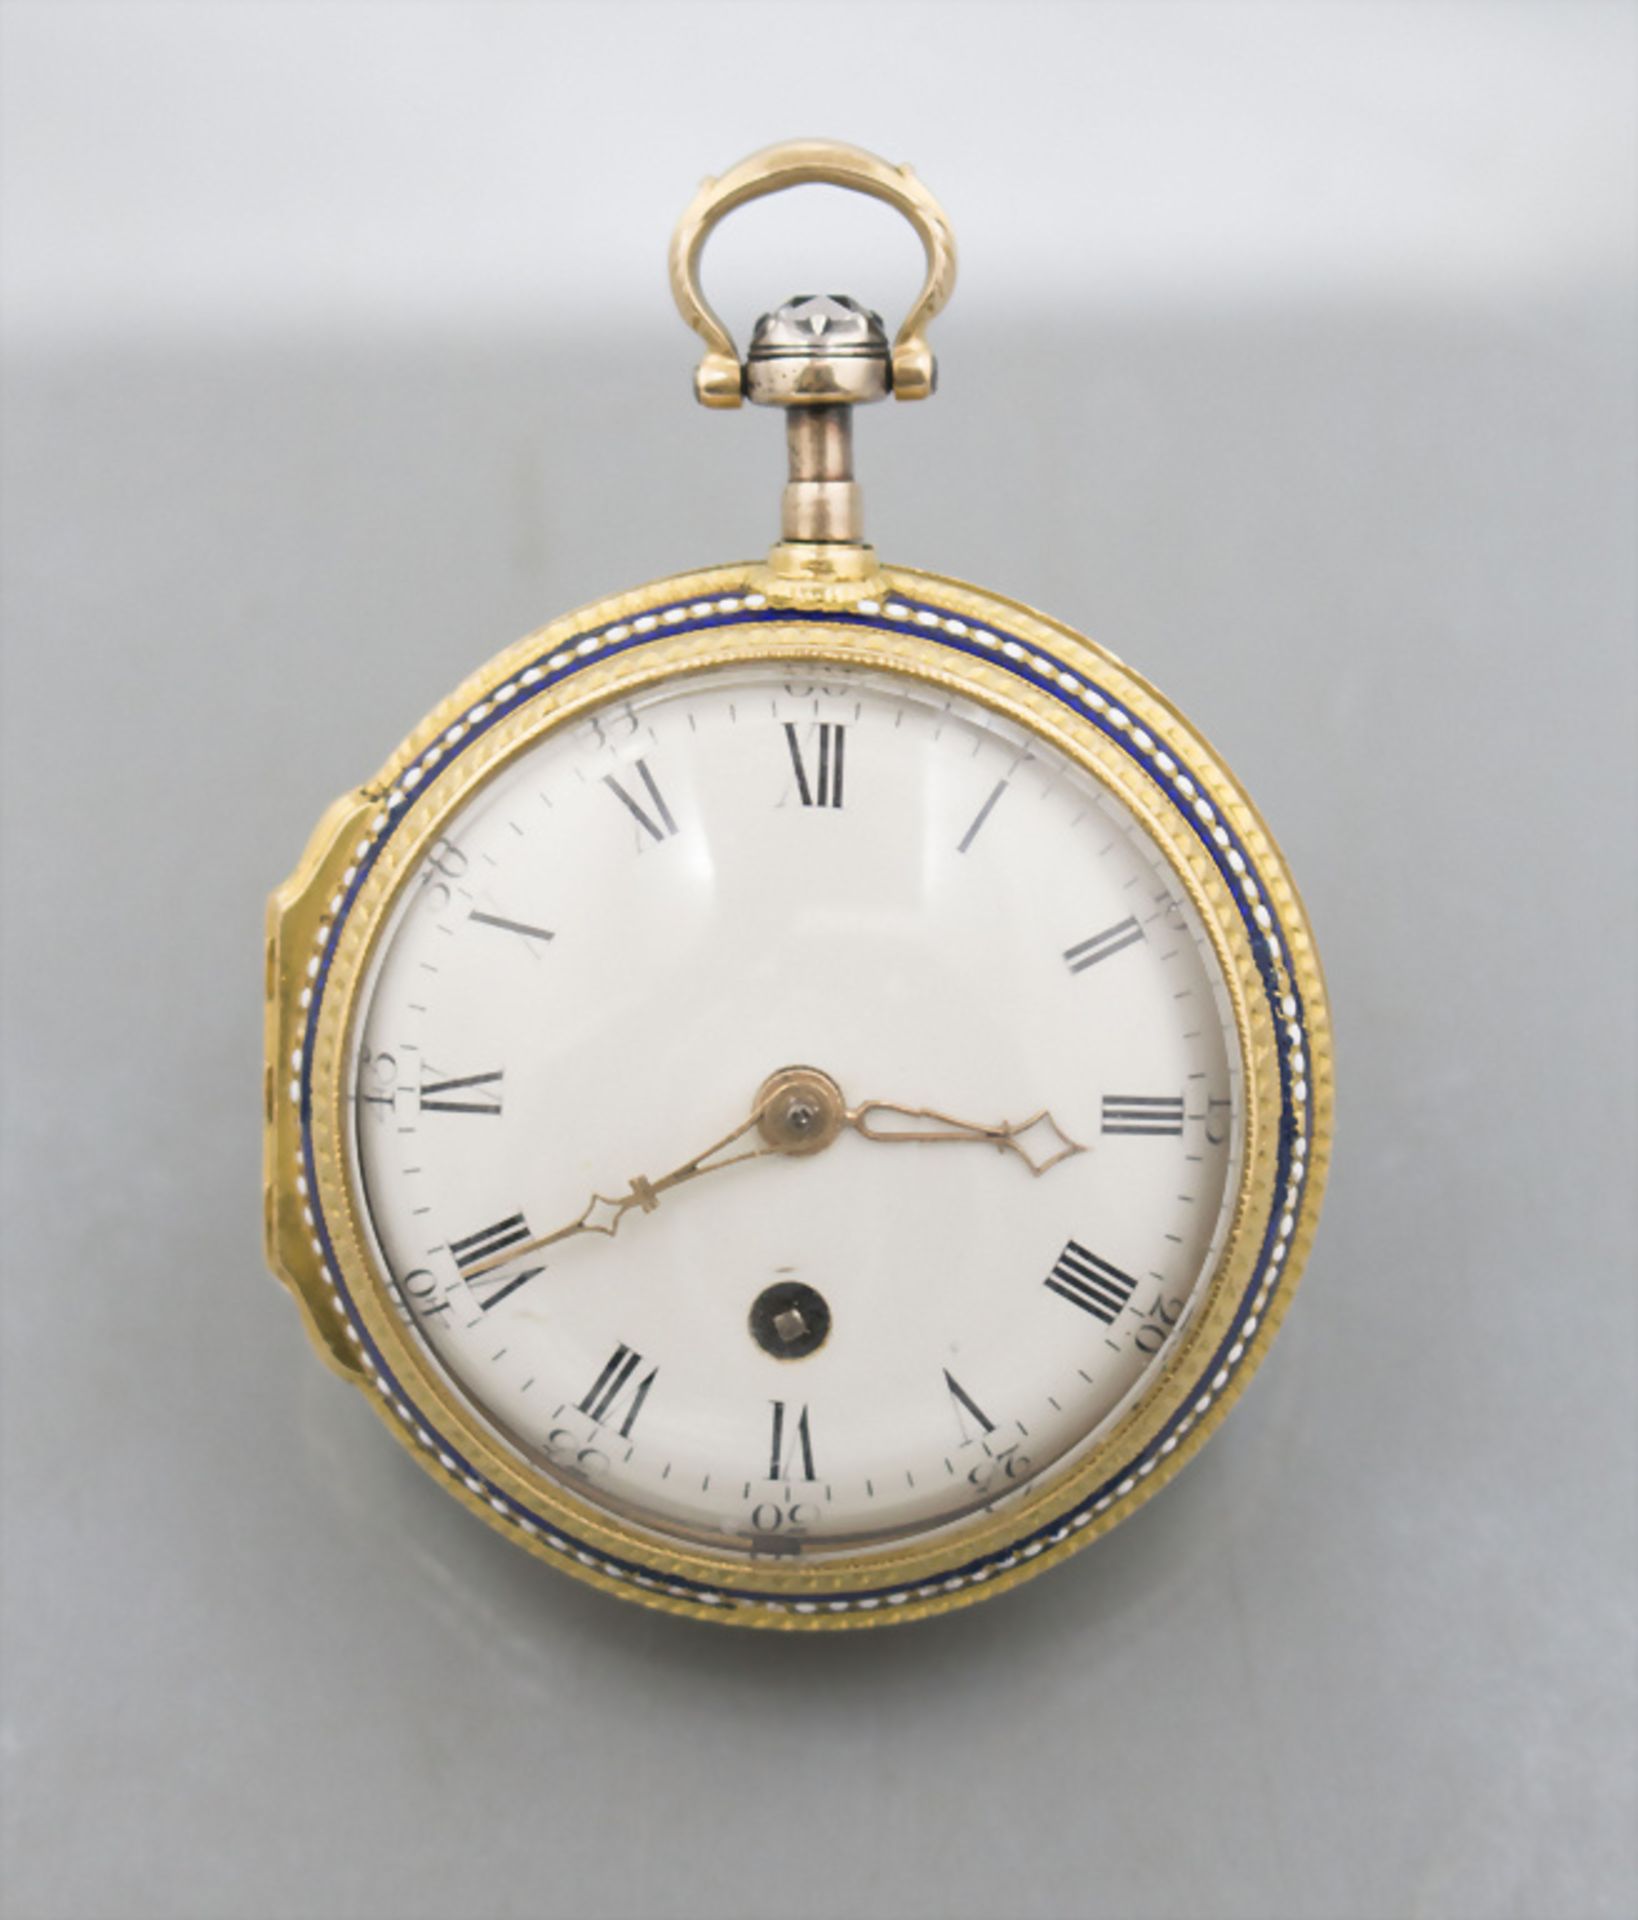 Louis-Seize Taschenuhr mit Email / An 18 ct gold pocket watch, James Mc Cabe, London, um 1777 - Image 2 of 5